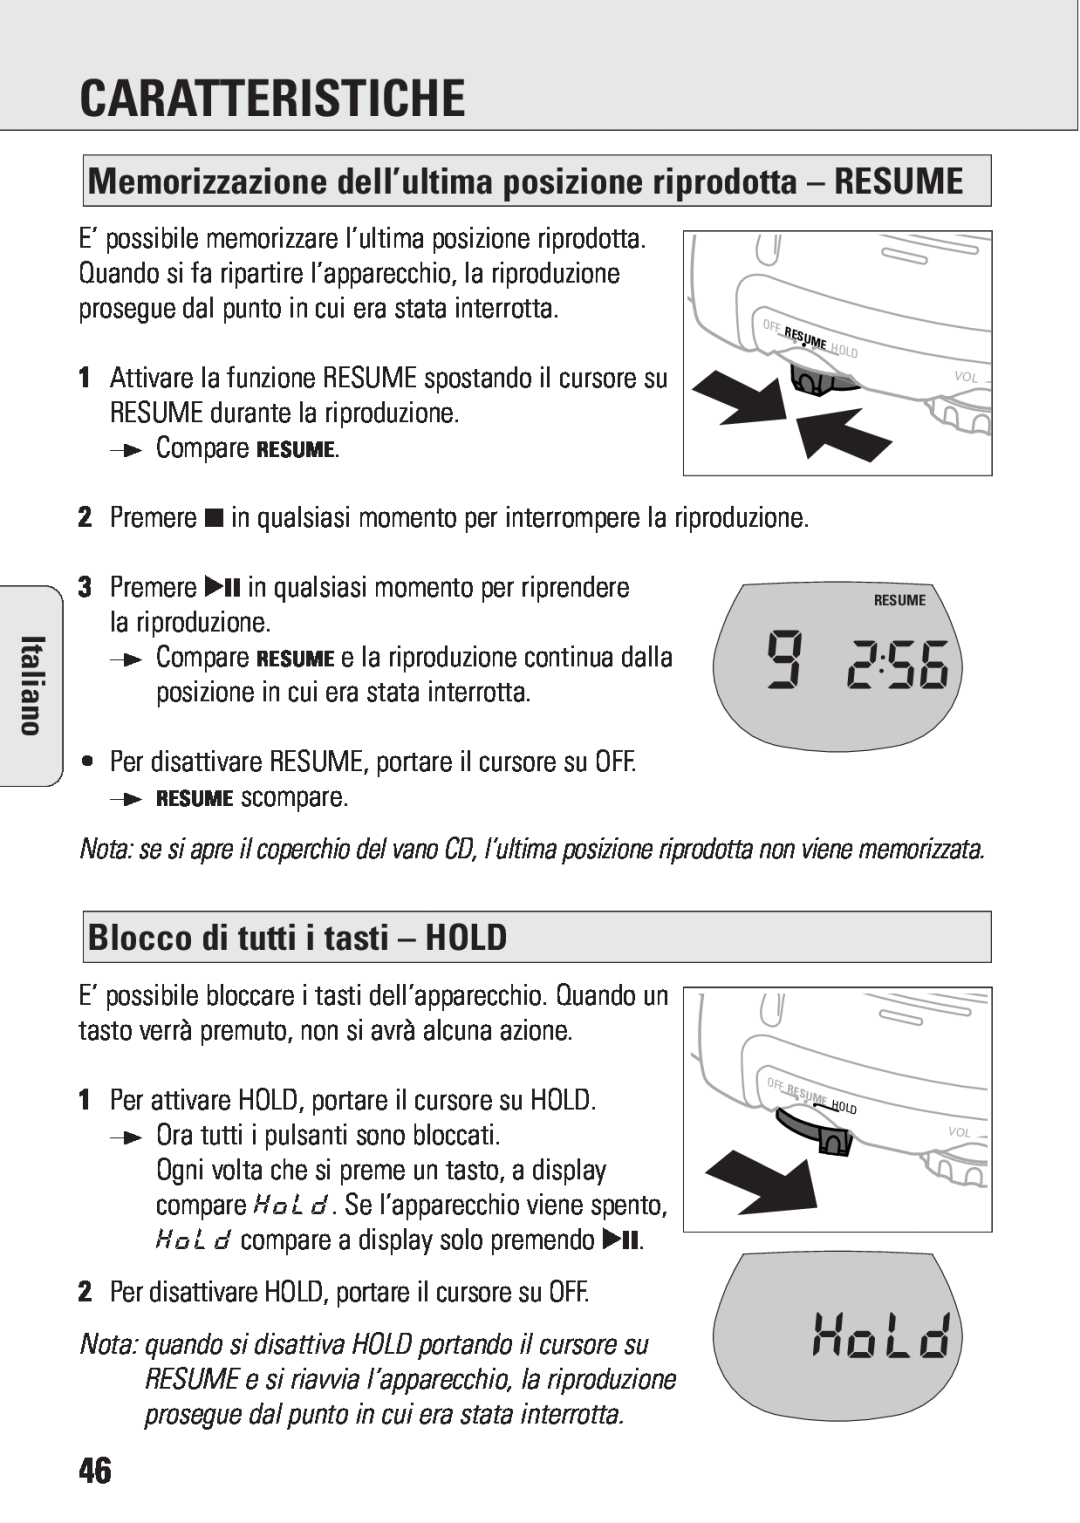 Philips ACT 7583 manual Blocco di tutti i tasti – HOLD, Caratteristiche, Italiano 